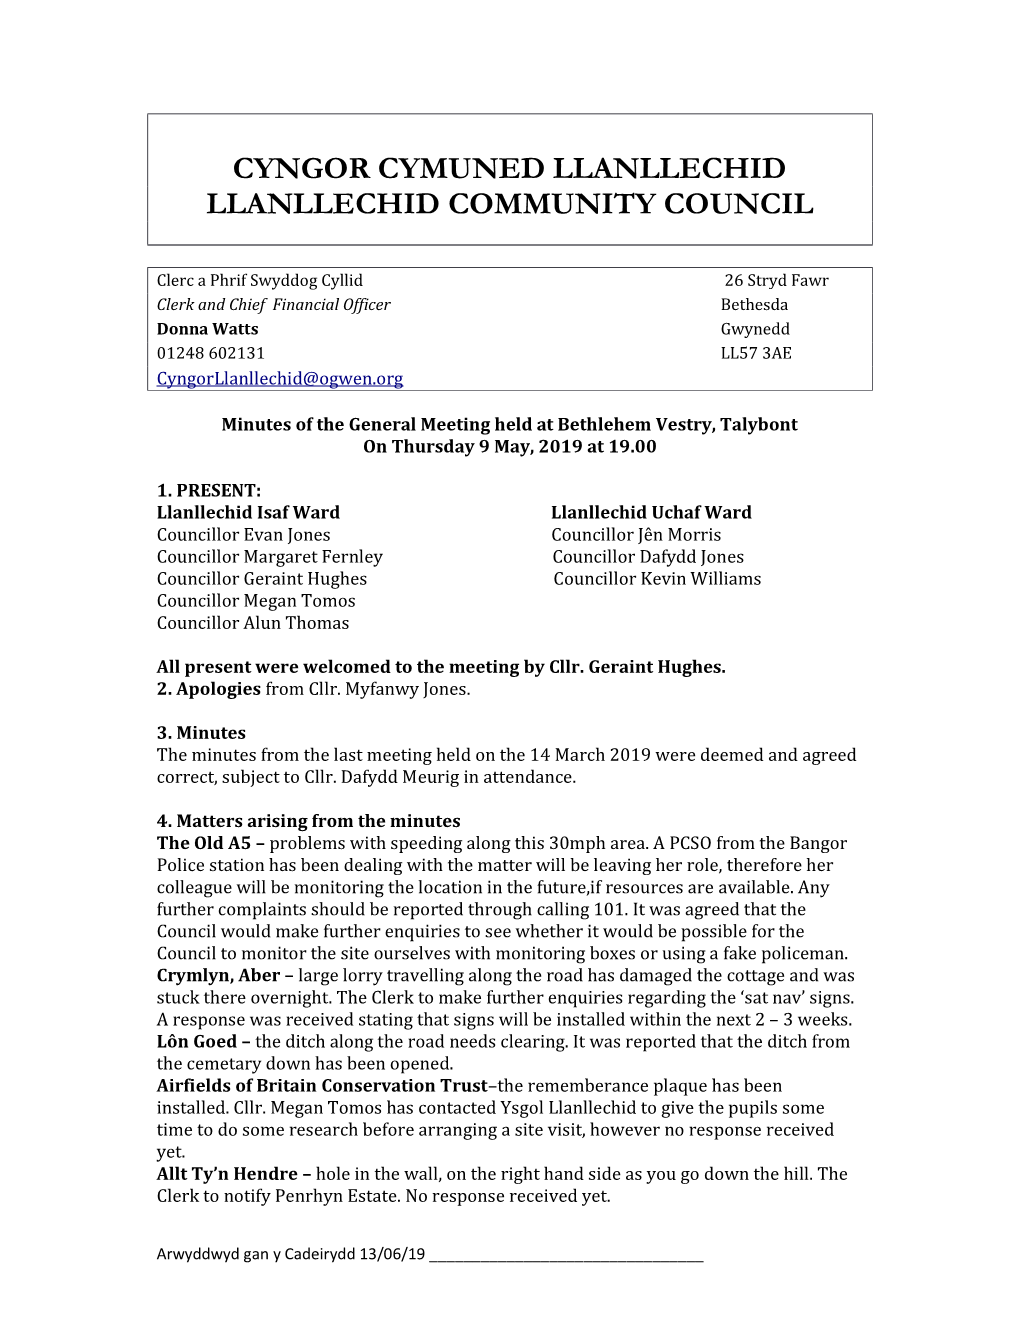 Cyngor Cymuned Llanllechid Llanllechid Community Council